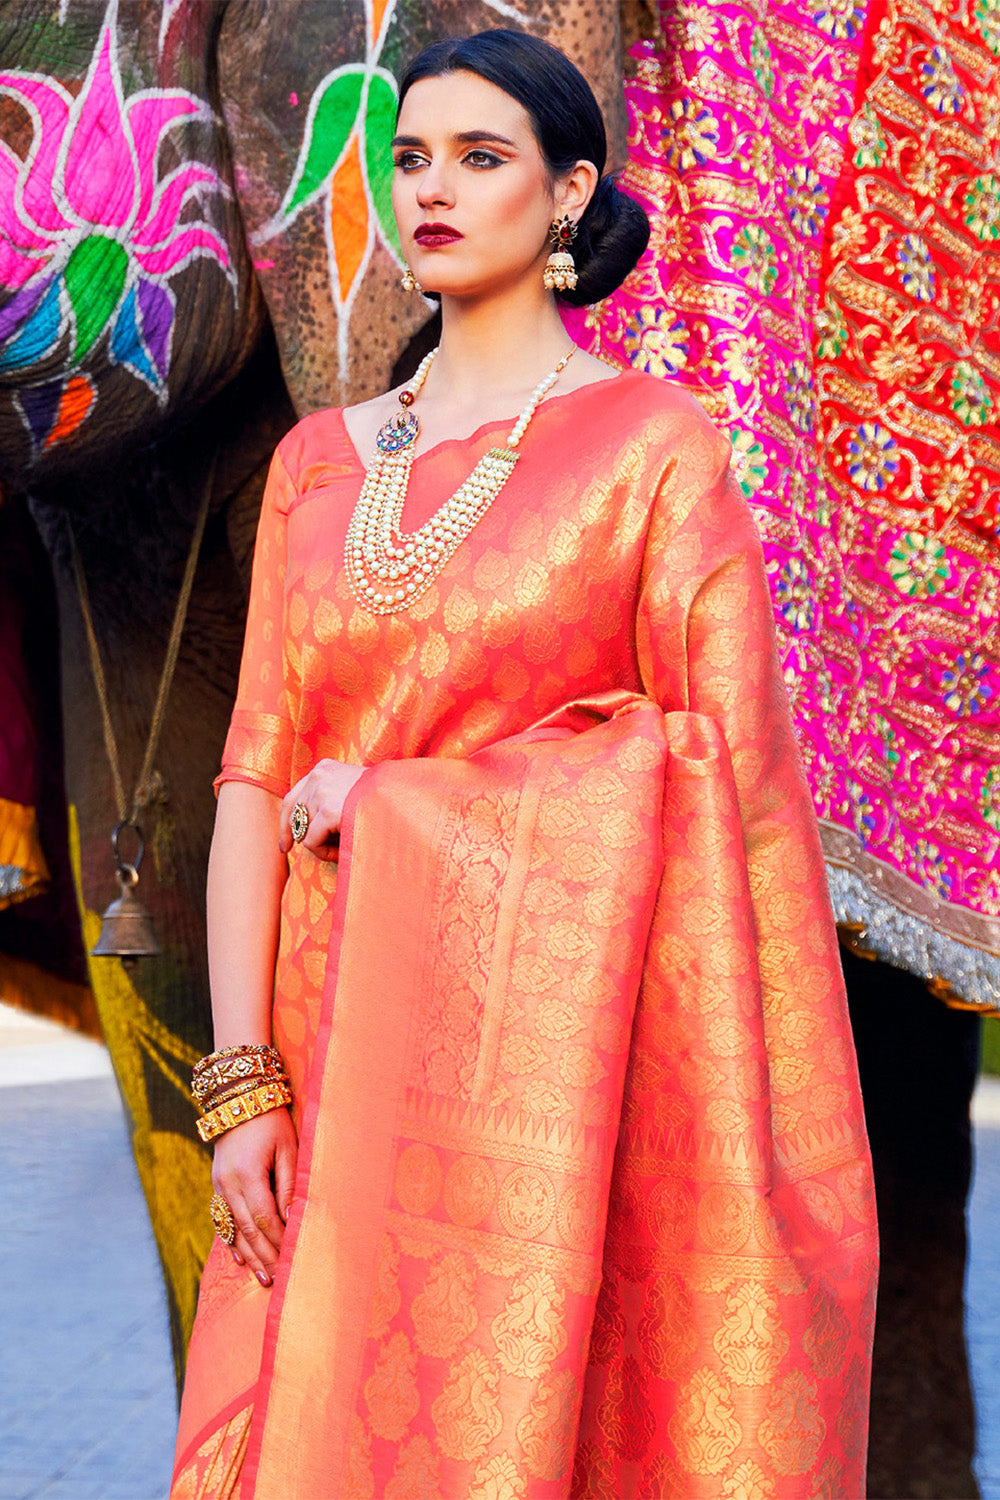 Womens Kanjivaram Silk Orange Gold Saree With Blouse Piece